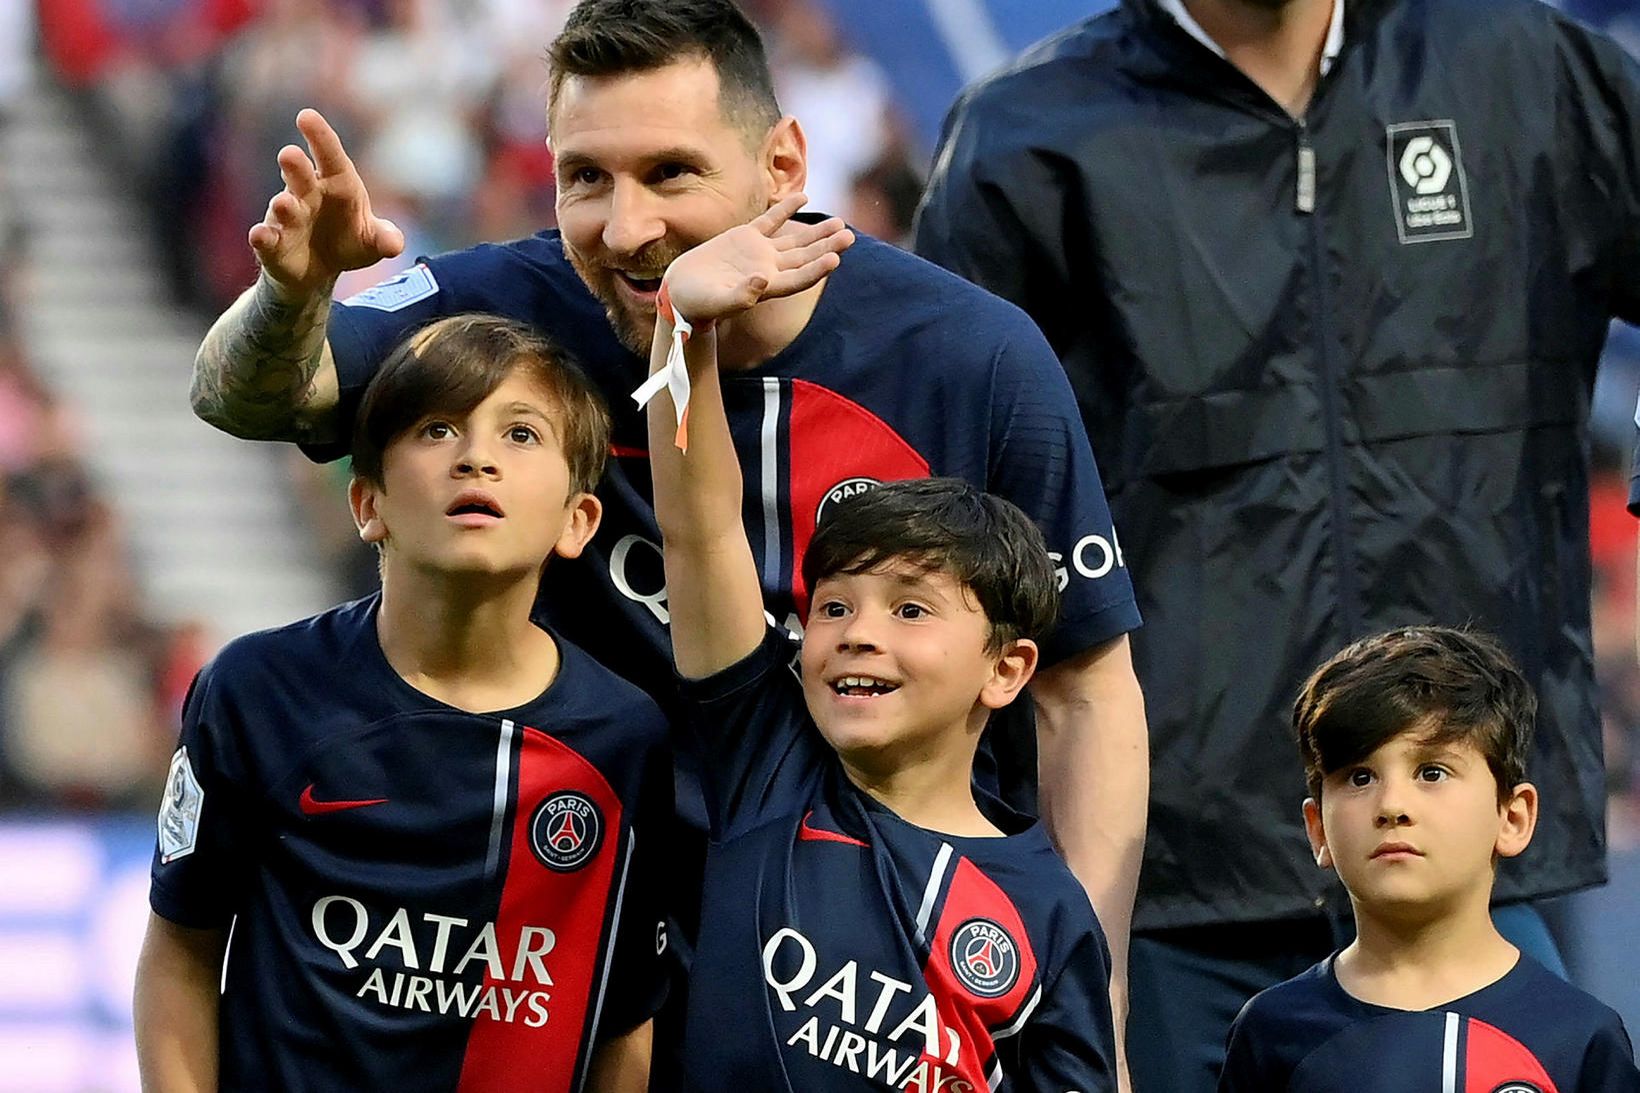 Lionel Messi ásamt sonum sínum fyrir leik.